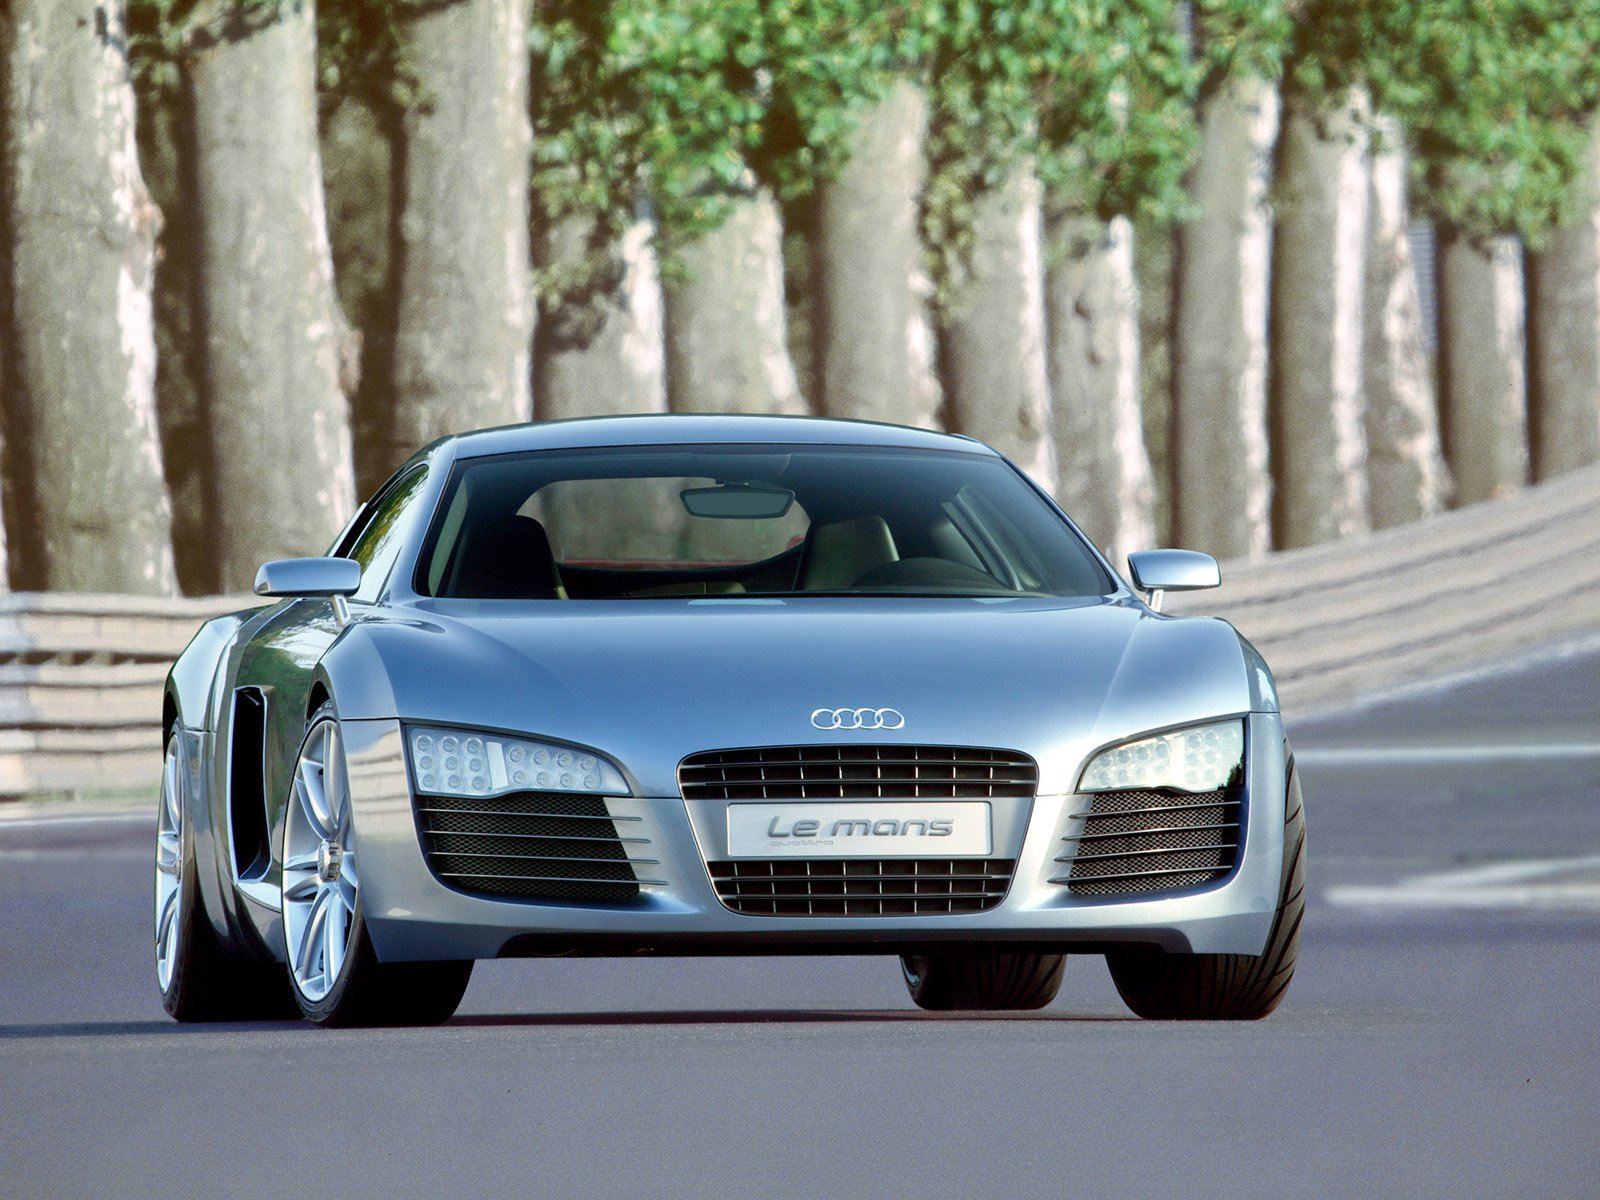 2003, Audi, Le mans, Quattro, Concept, Lemans, Supercar Wallpaper